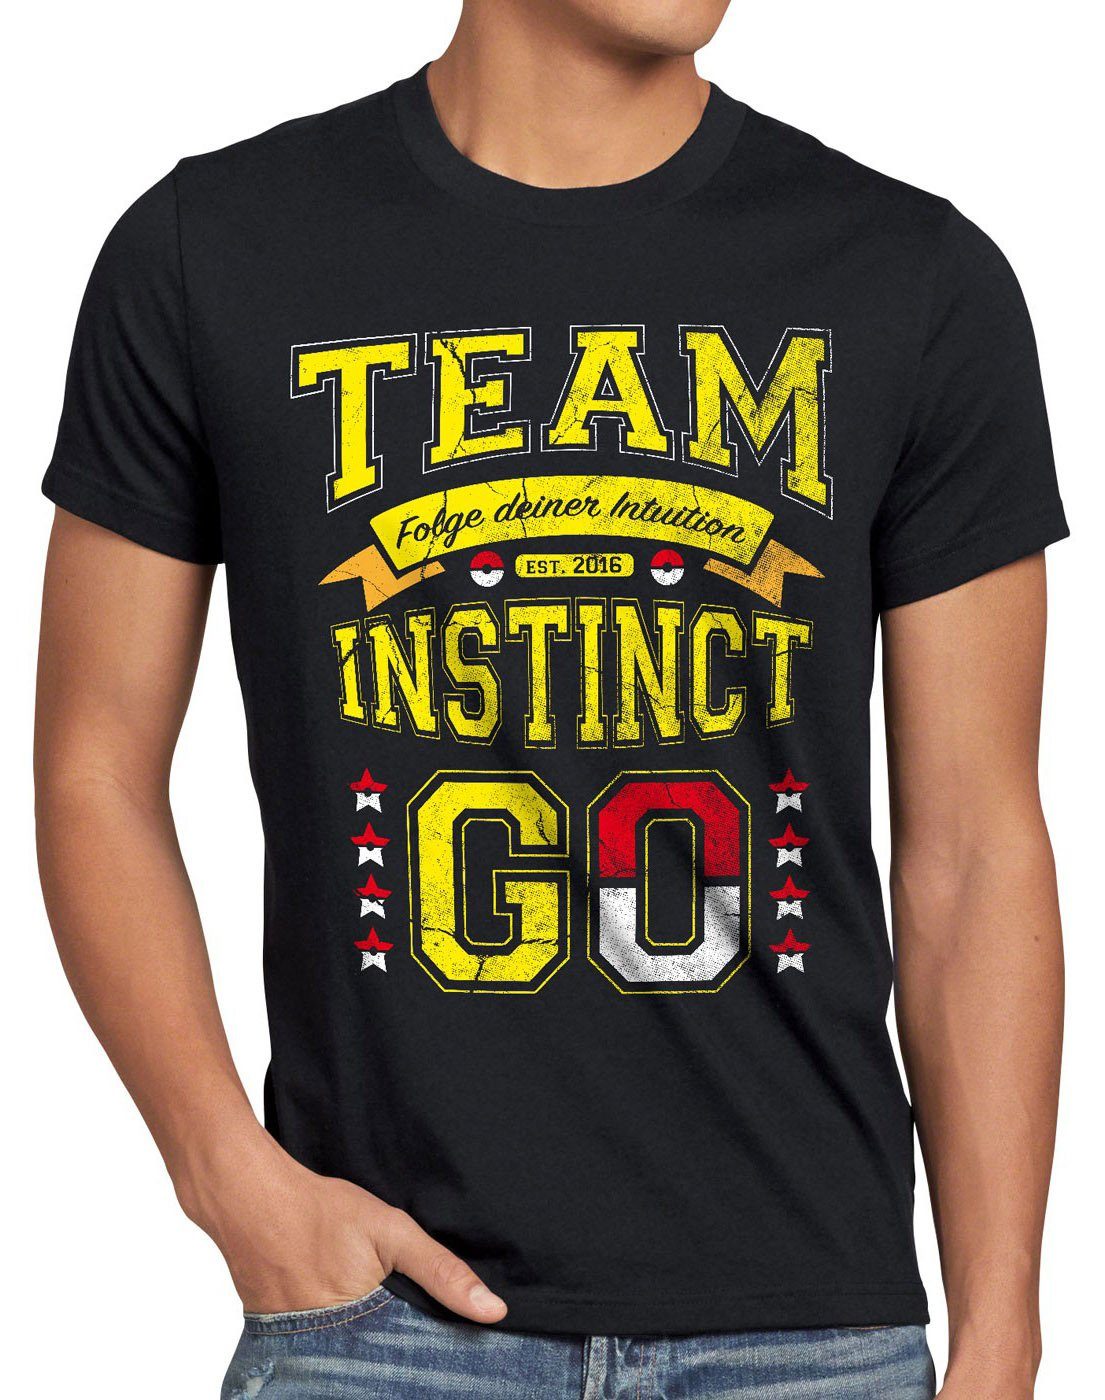 style3 Print-Shirt Herren T-Shirt Team Gelb Instinct Intuition poke go catch blitz ball spiel arena schwarz